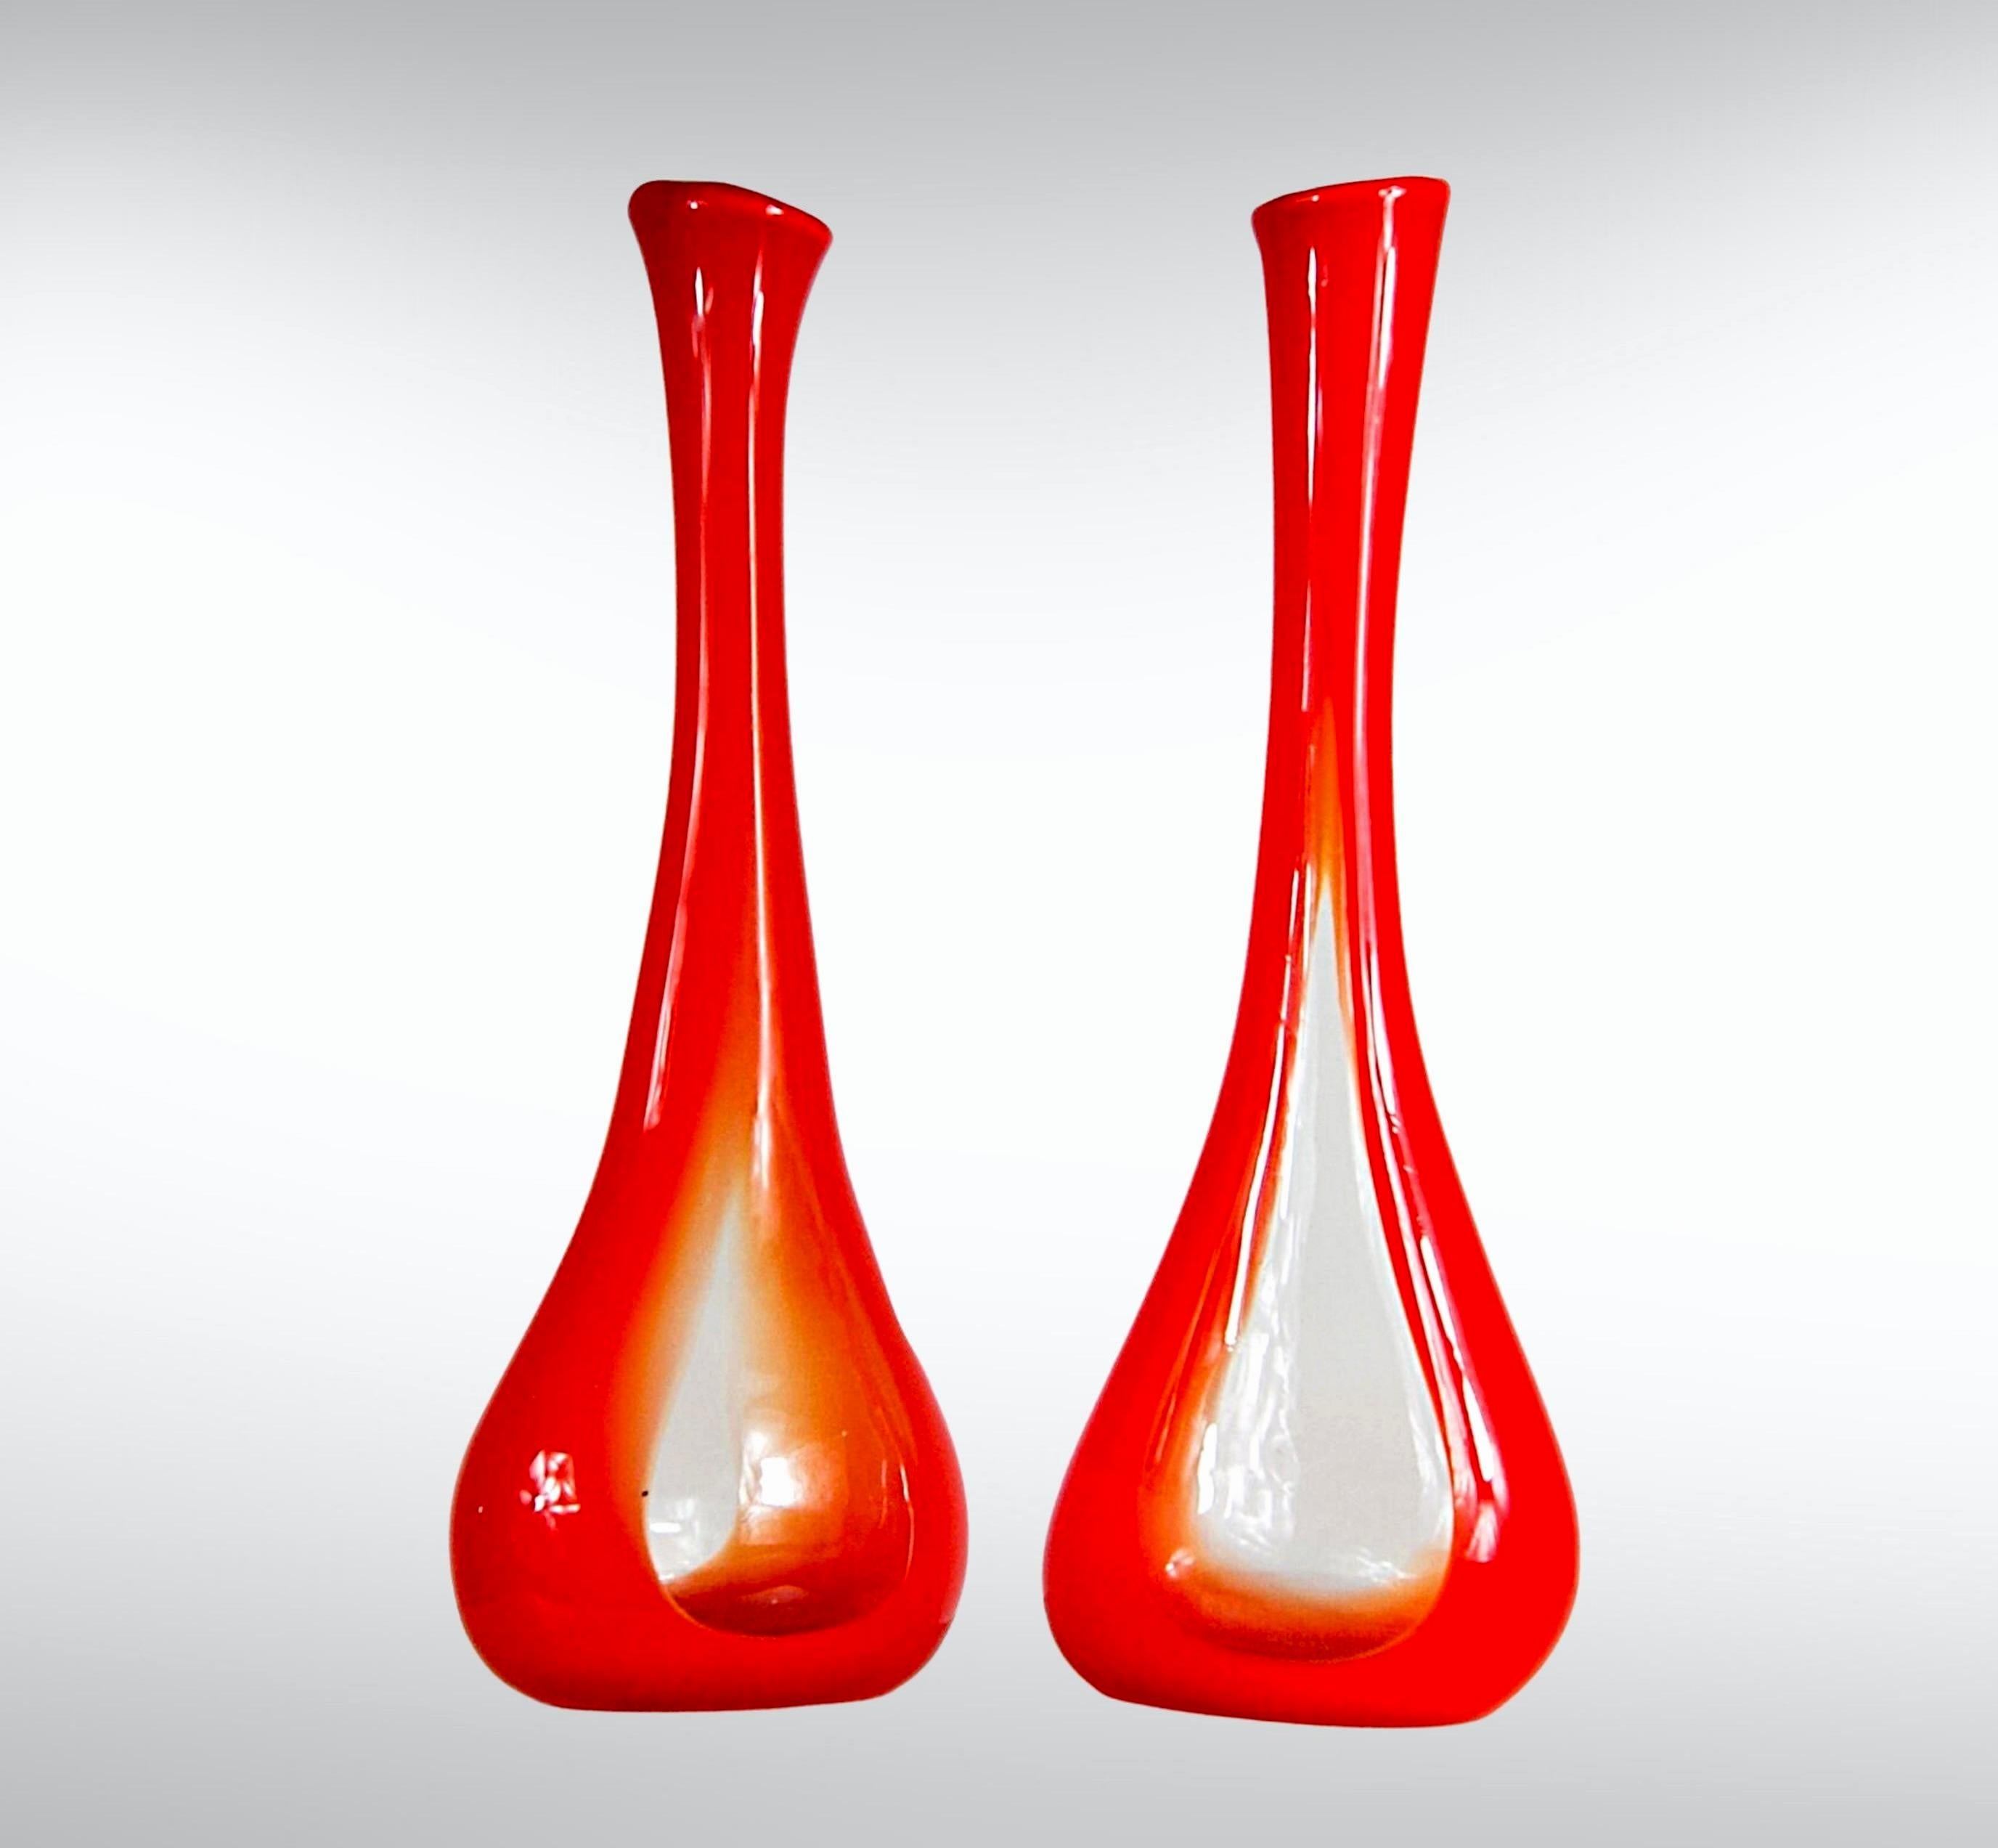 Paire de grands vases orange à illusion d'optique en verre tchèque/bohémien des années 1960 Space Age.
Vases à illusion d'optique de couleur orange dégradée, allant d'un orange rouge flamboyant à un cœur en verre transparent.
Impressionnants grands